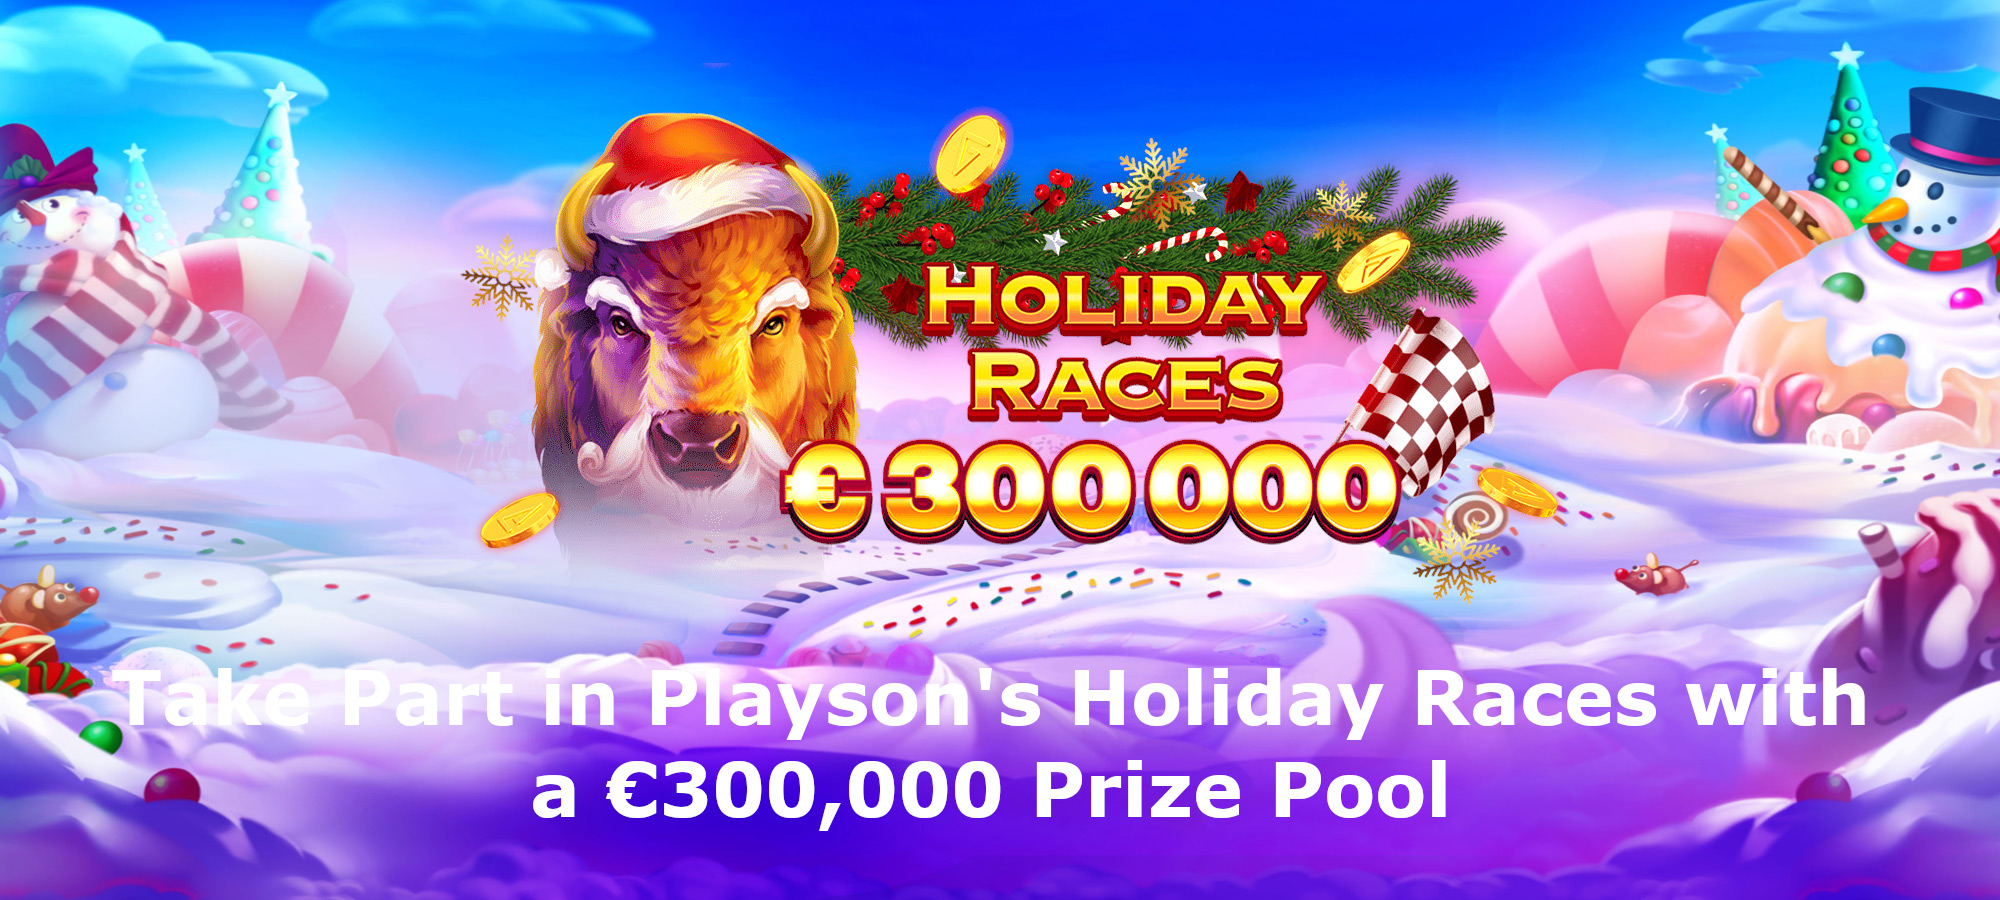 เข้าร่วมการแข่งขัน Playson Holiday Races พร้อมเงินรางวัลรวม 300,000 ยูโร